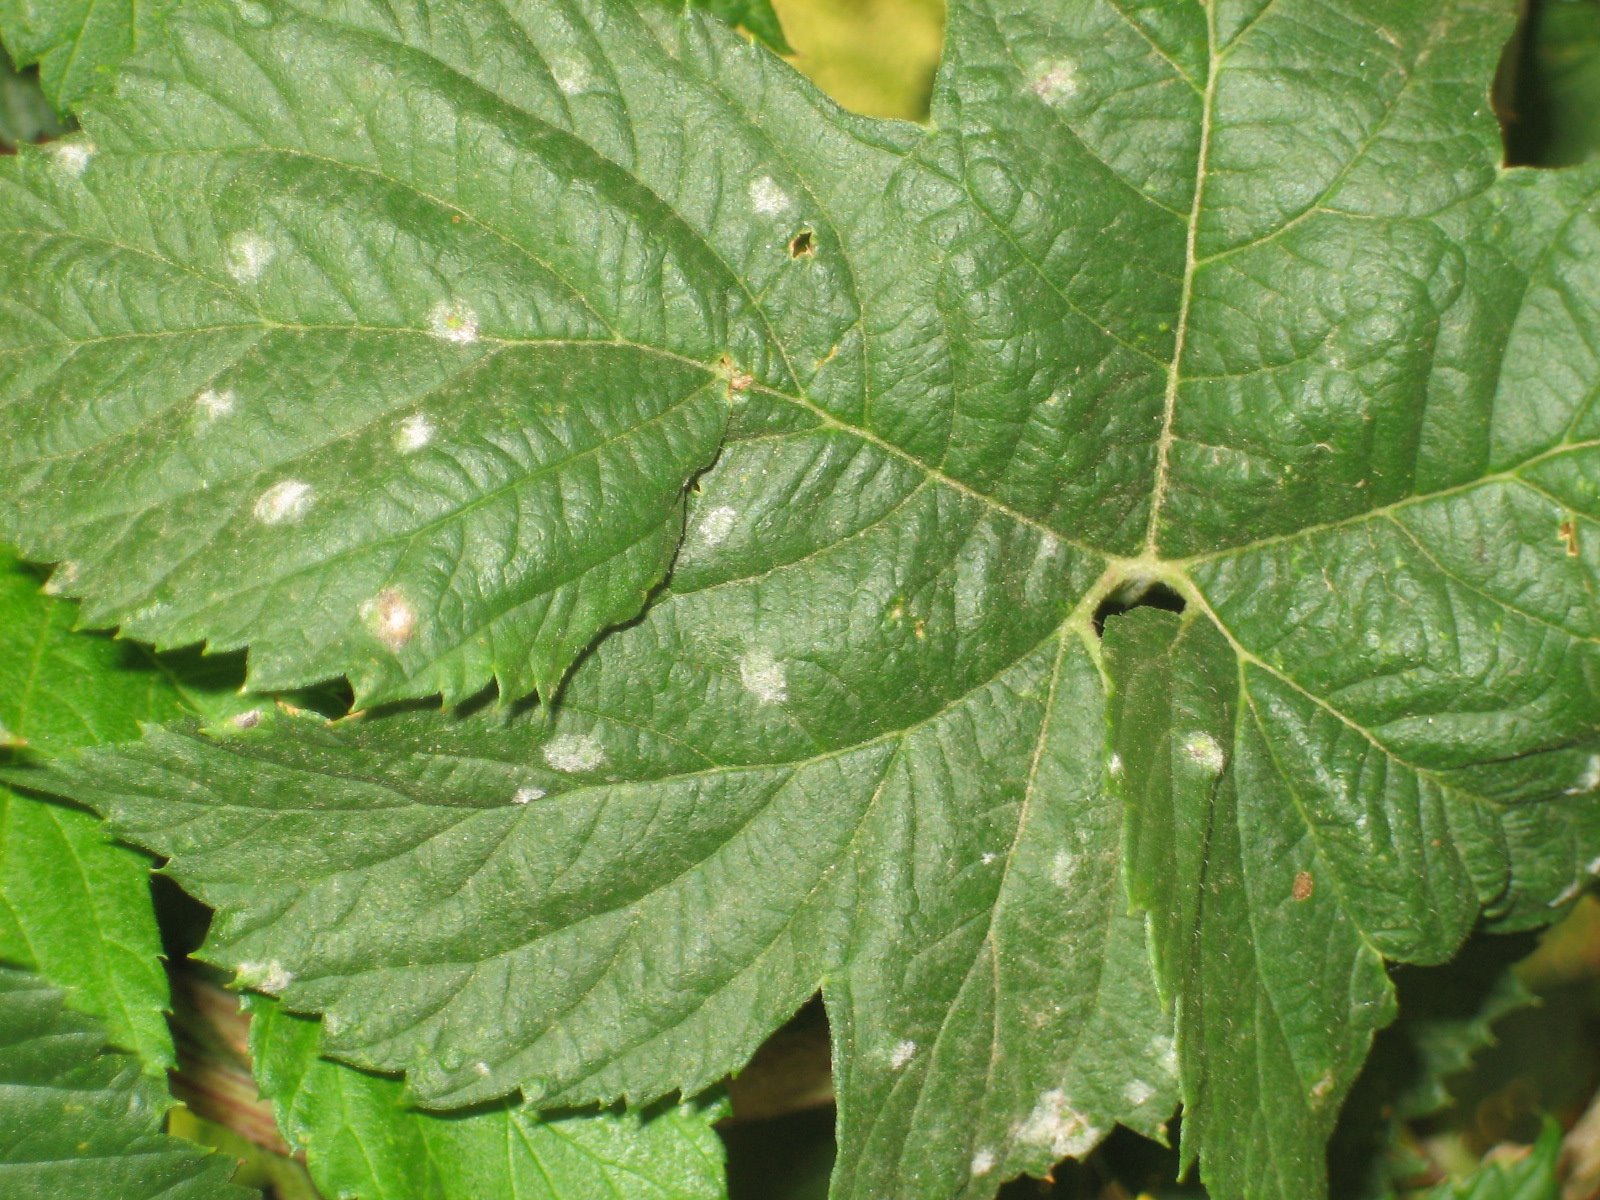 [Spots+of+powdery+mildew+on+leaf+July+3,+2008.jpg]